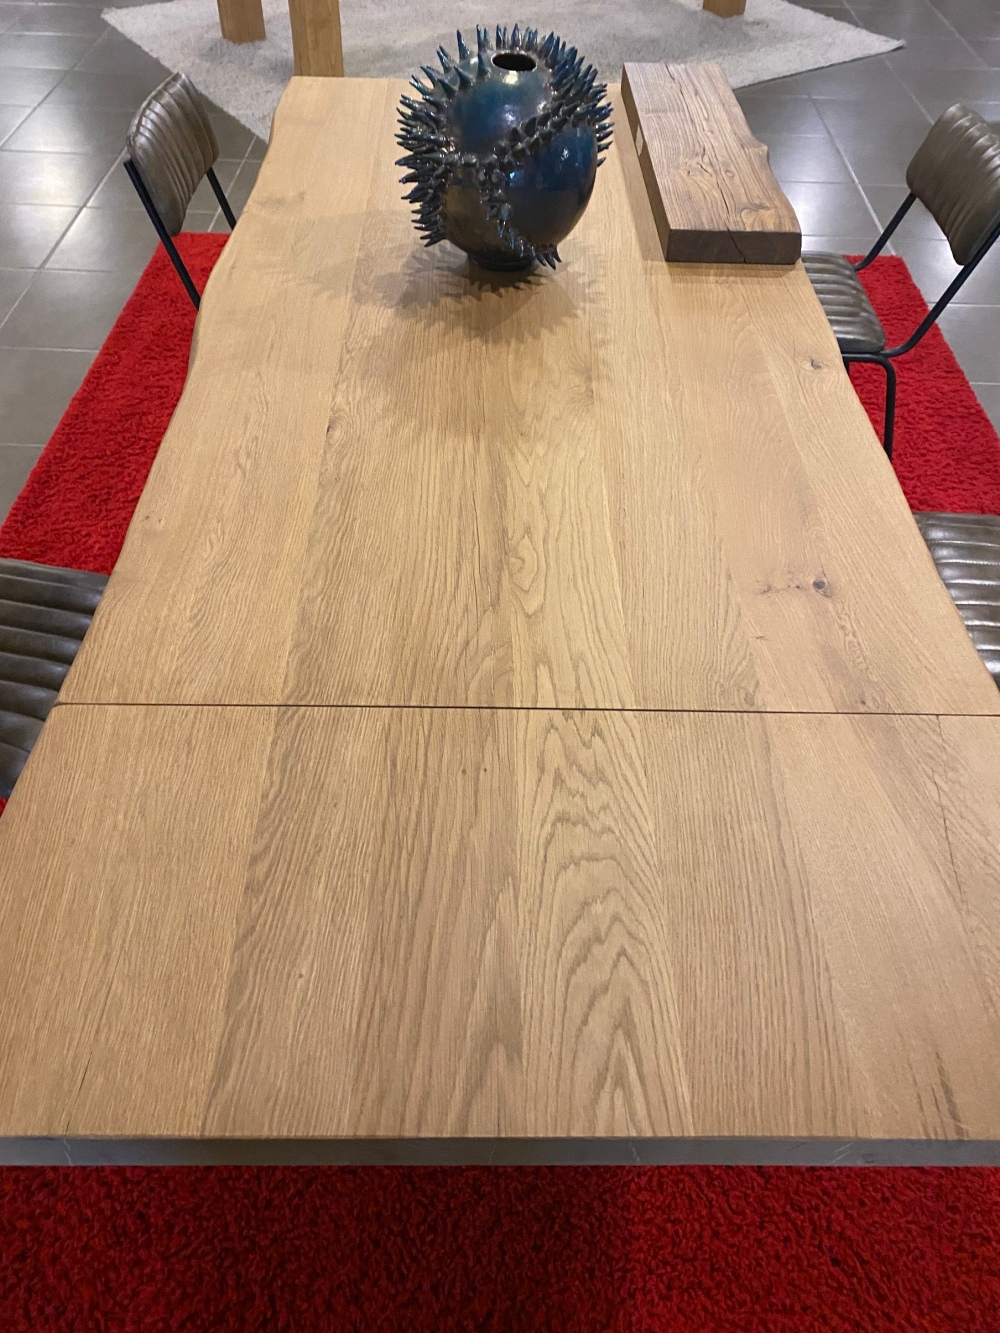 Tavolo rovere massello moderno con gambe nere in metallo 100x200